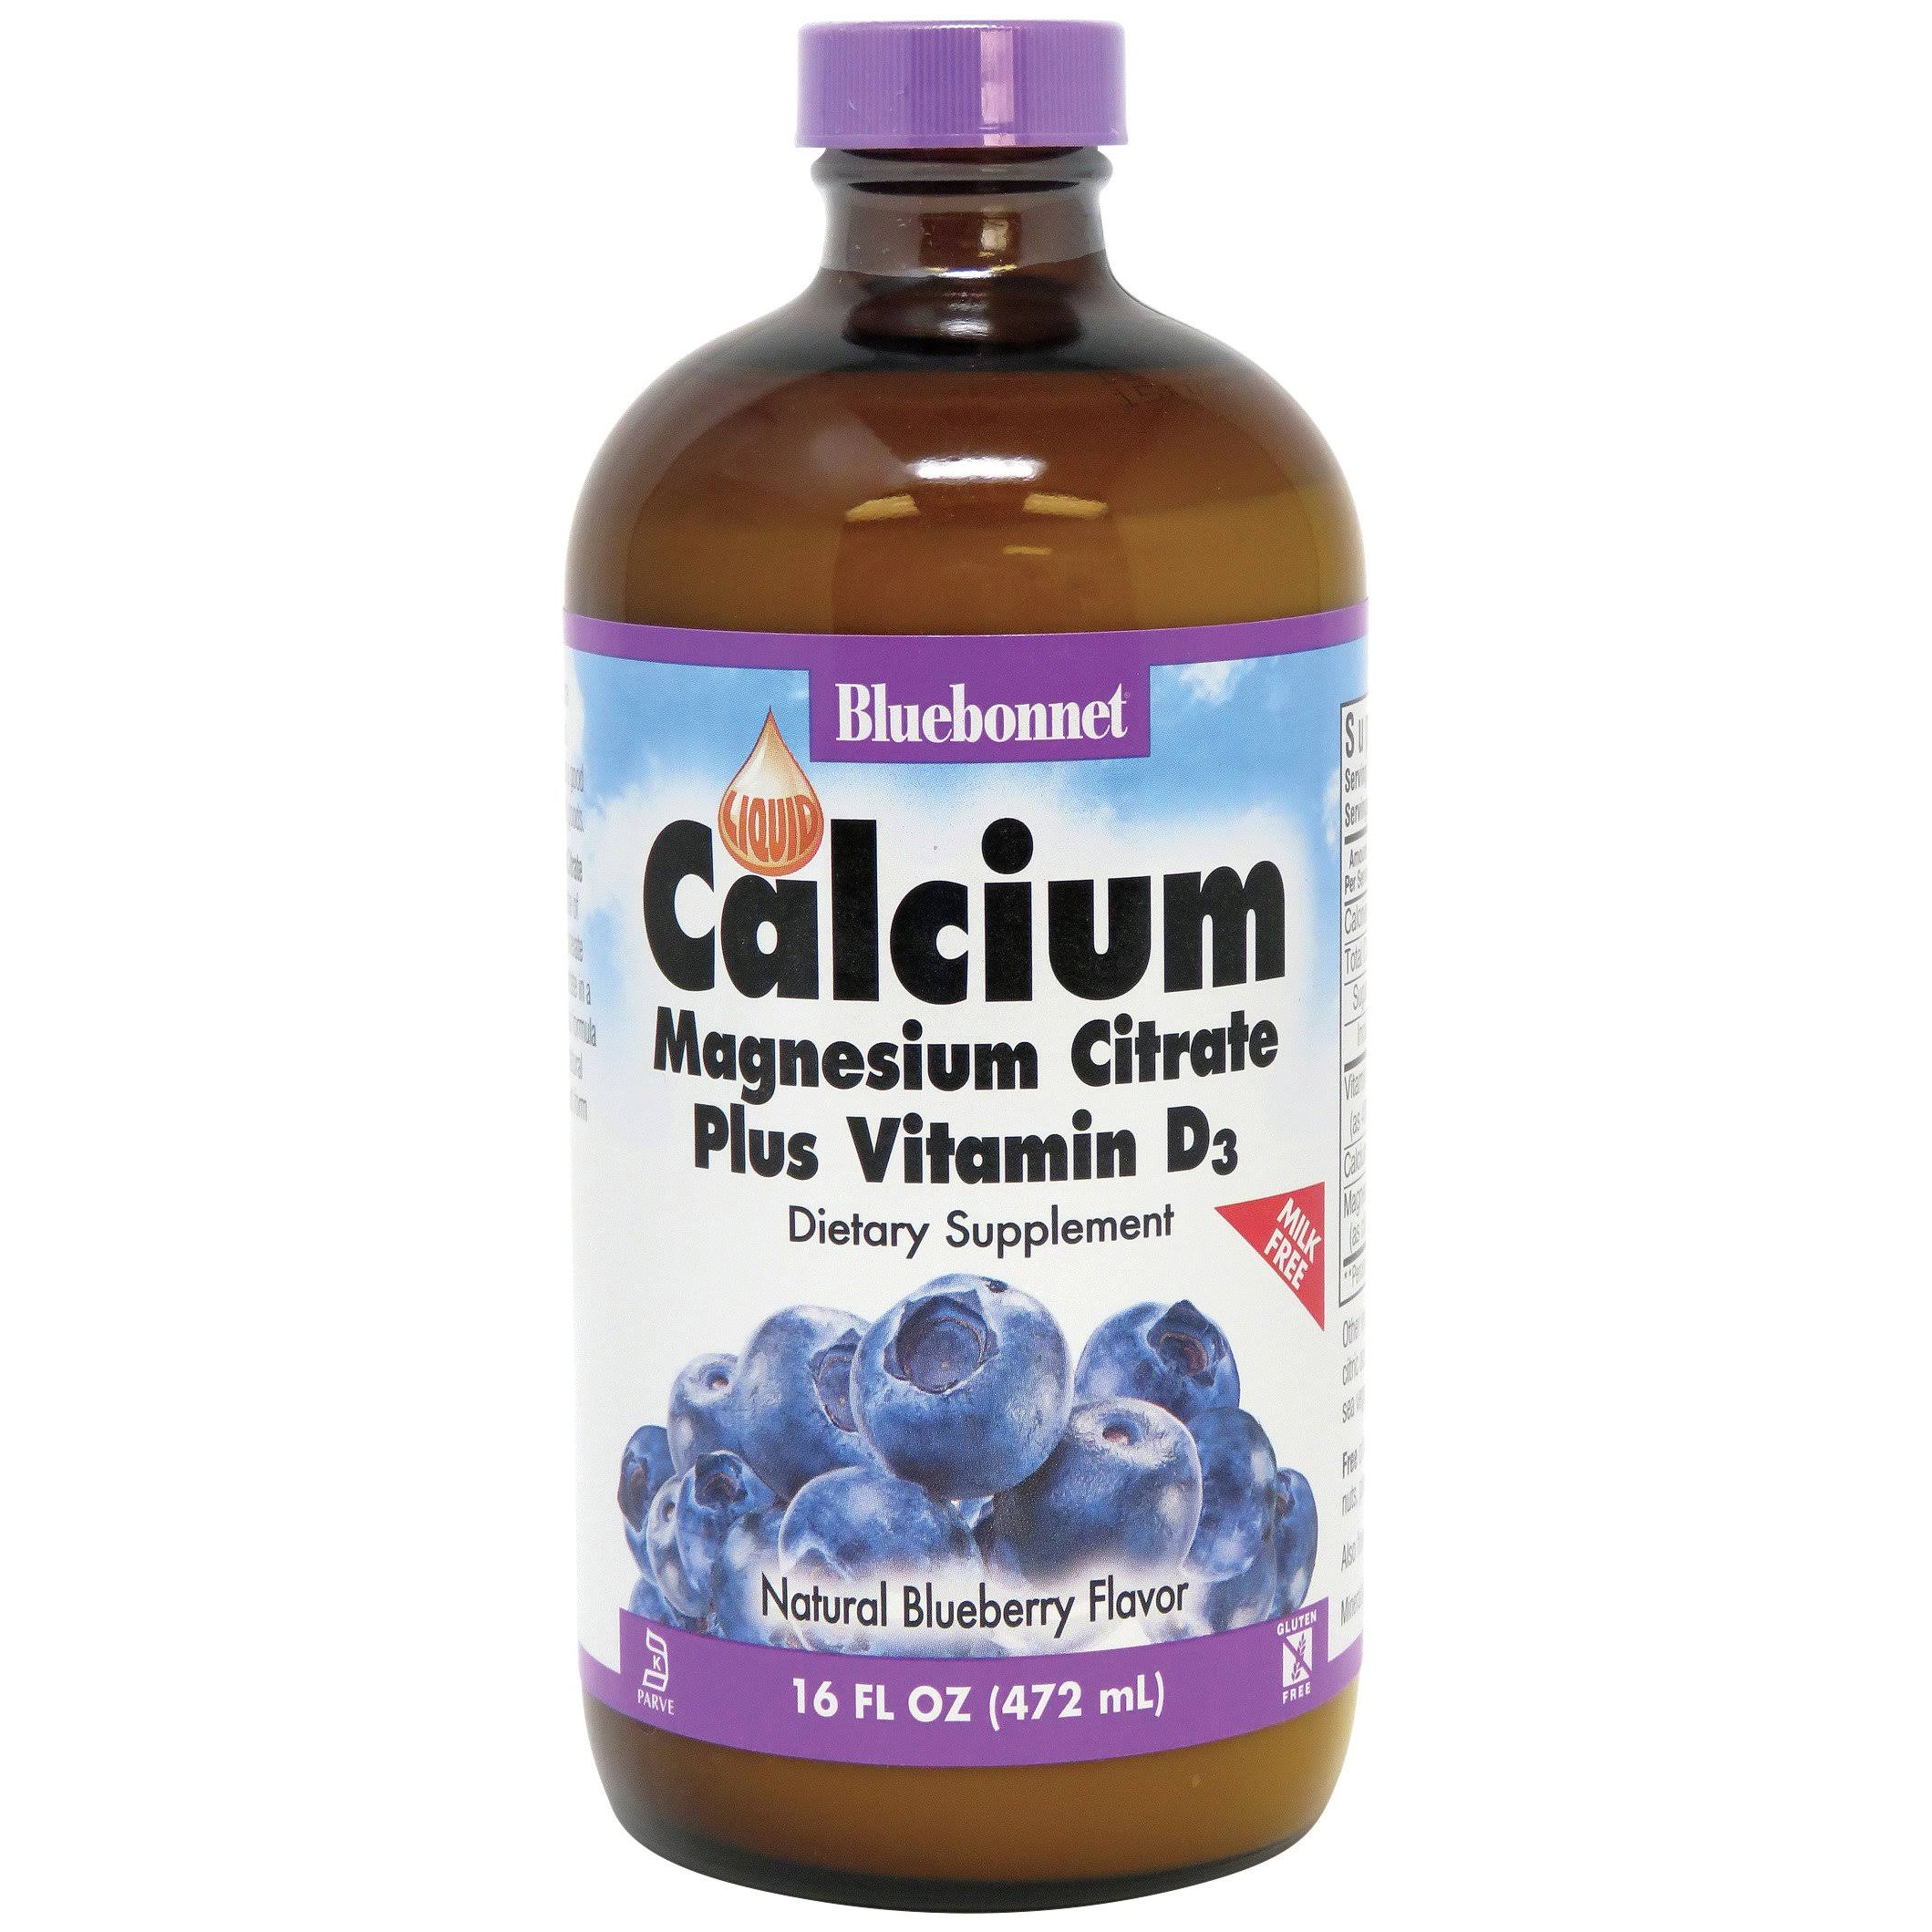 Liquid Calcium Magnesium Citrate Plus Vitamin D3 - Natural Blueberry Flavor, 16 fl oz